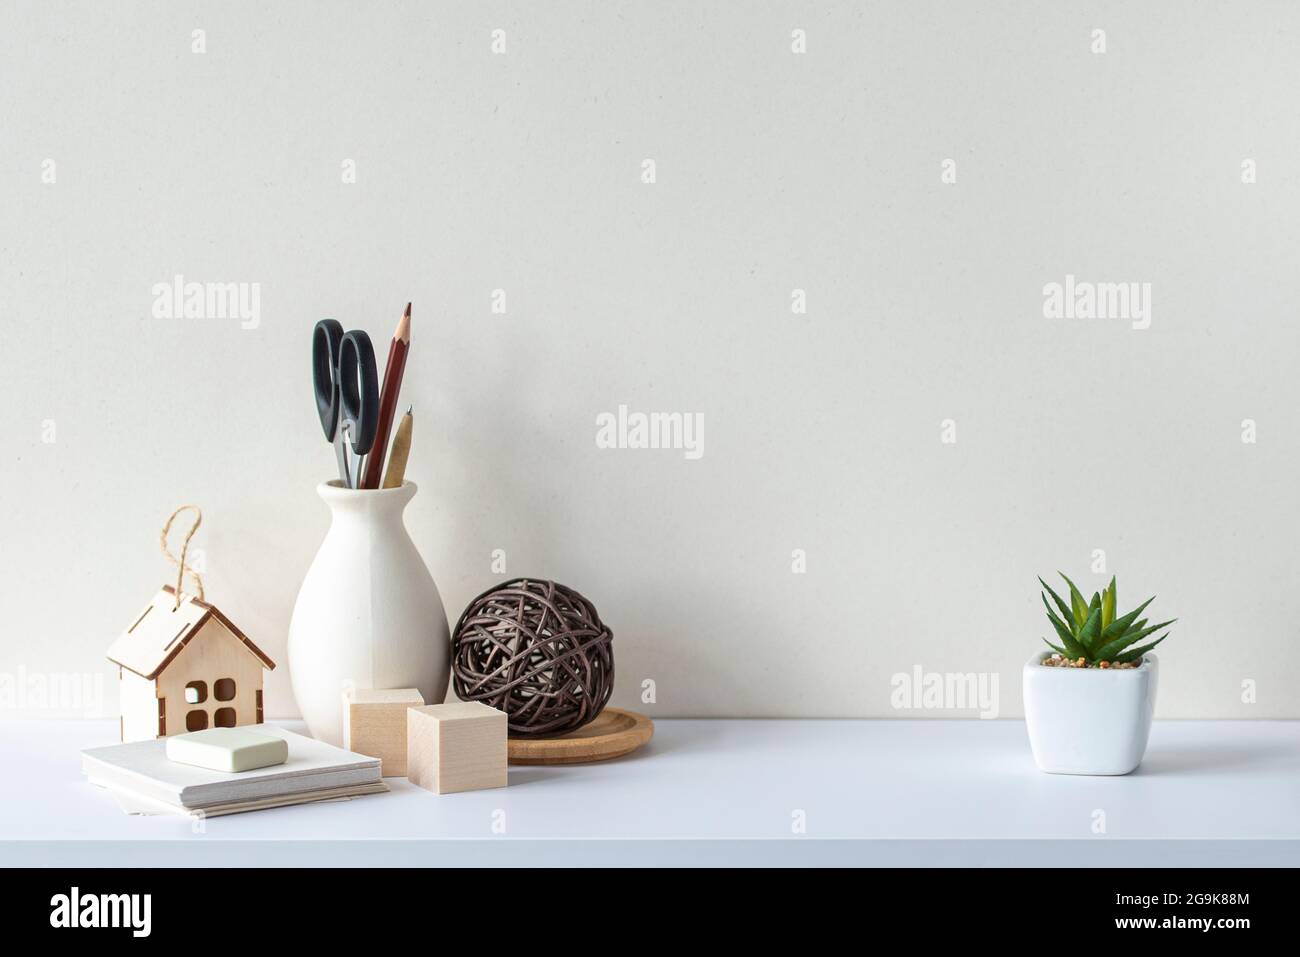 Innenausstattung mit weißem Schreibtisch oder Regal, leere Wand, Schreibwaren, dekorative Pflanze. Skandinavischer Stil. Stockfoto